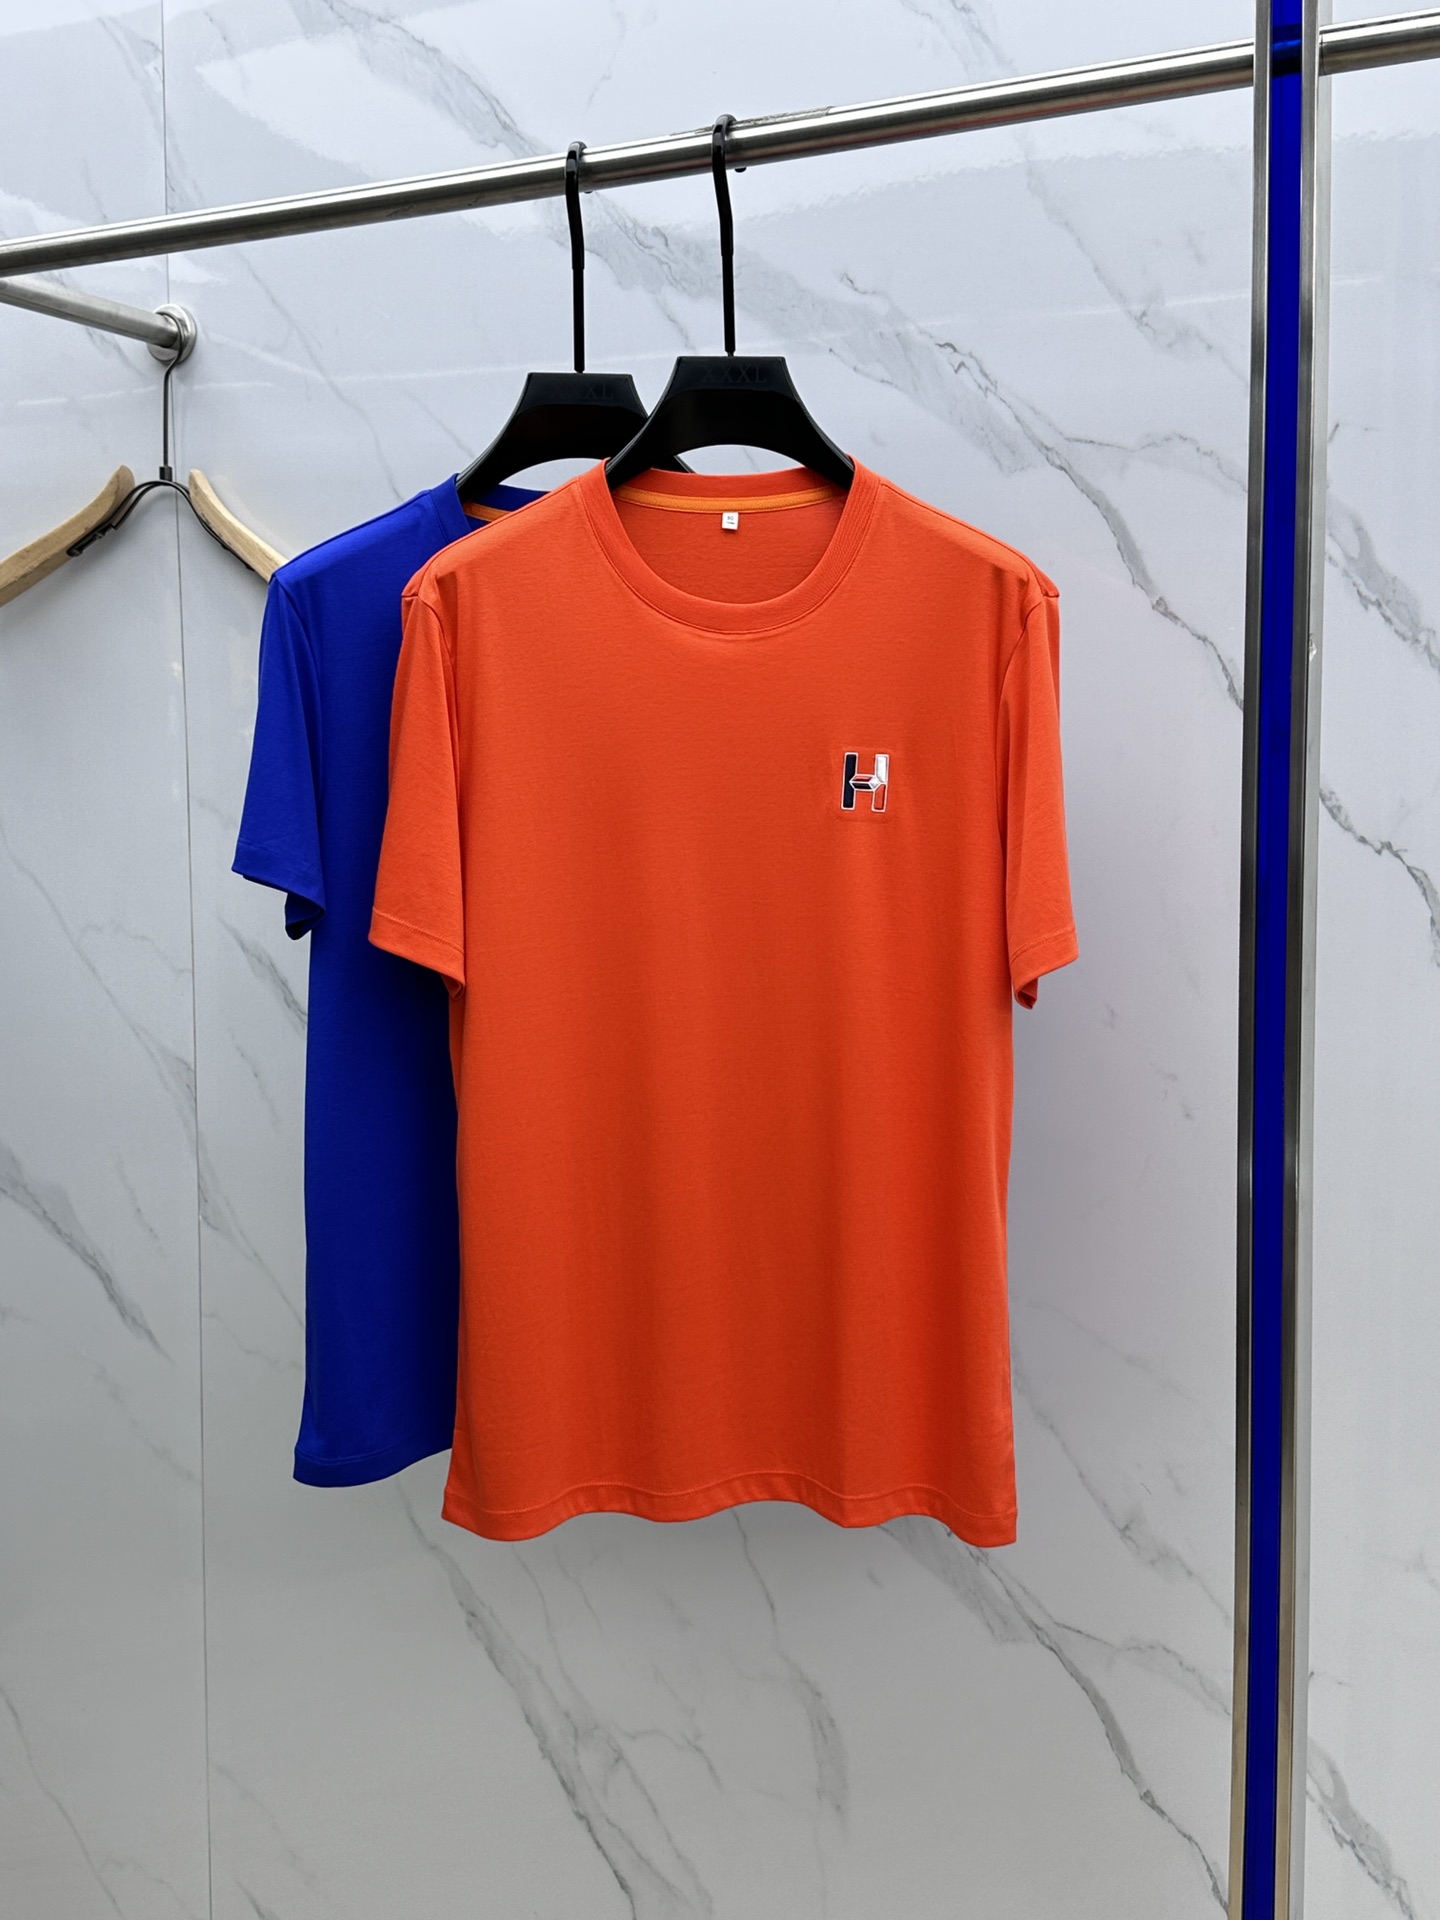 La meilleure réplique de qualité
 Hermes Vêtements T-Shirt Imprimé Coton mercerisé Manches courtes